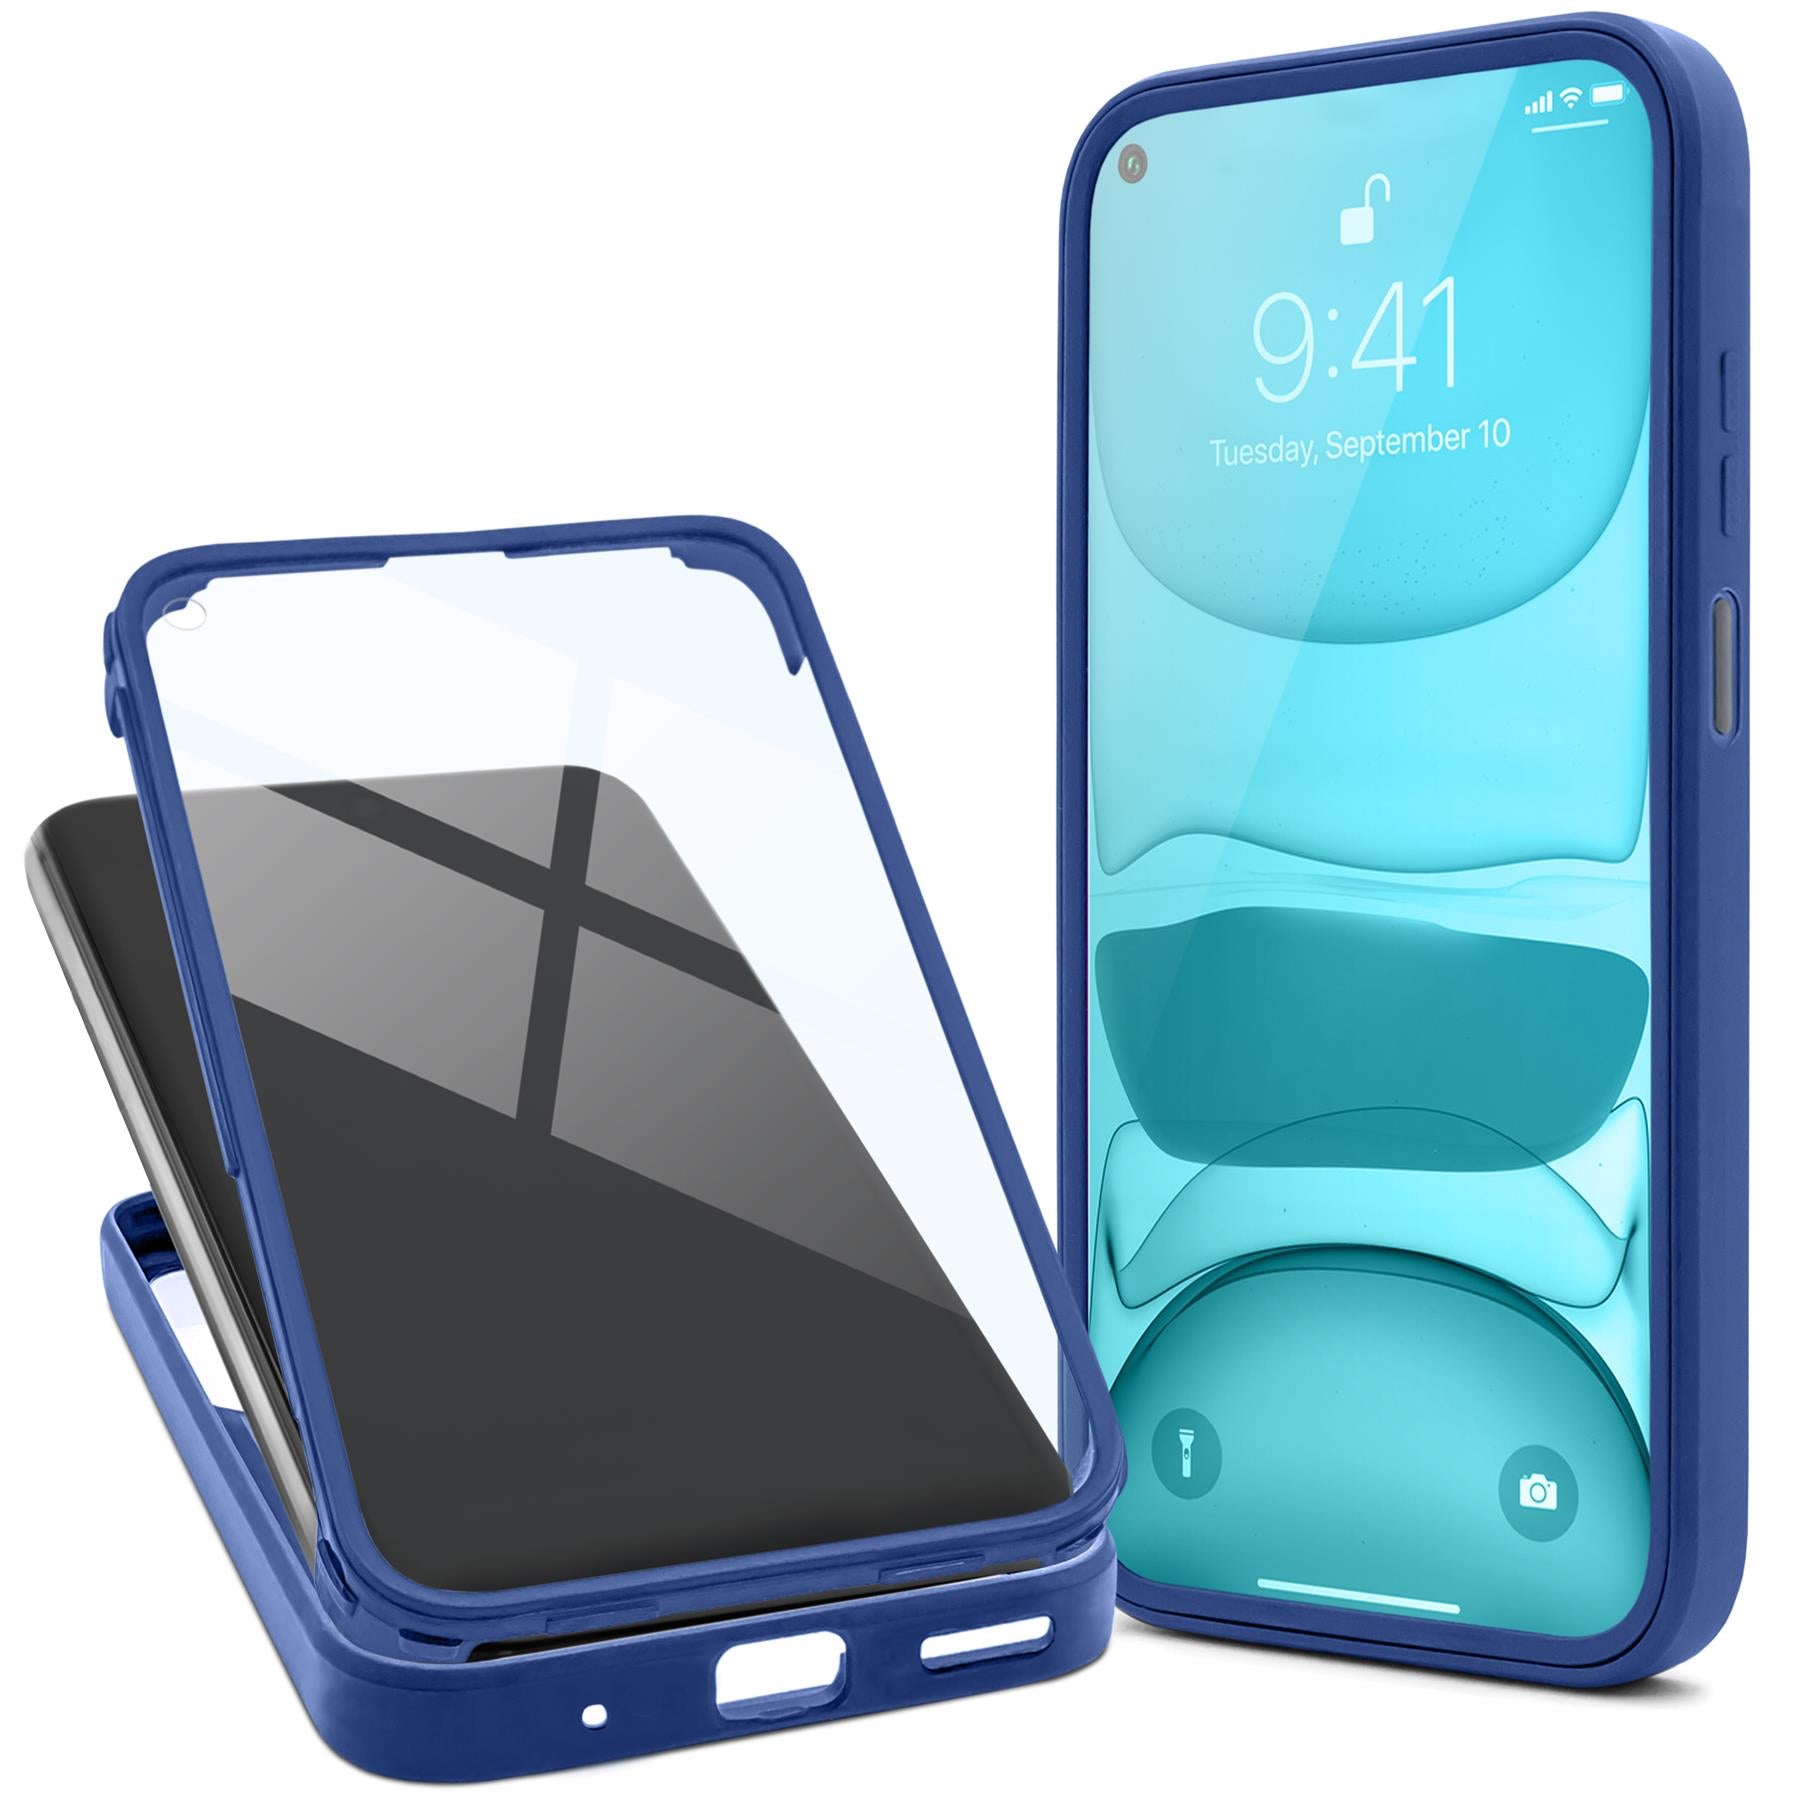 Protectores de pantalla iPhone 11 Pro Max - PhoneLife